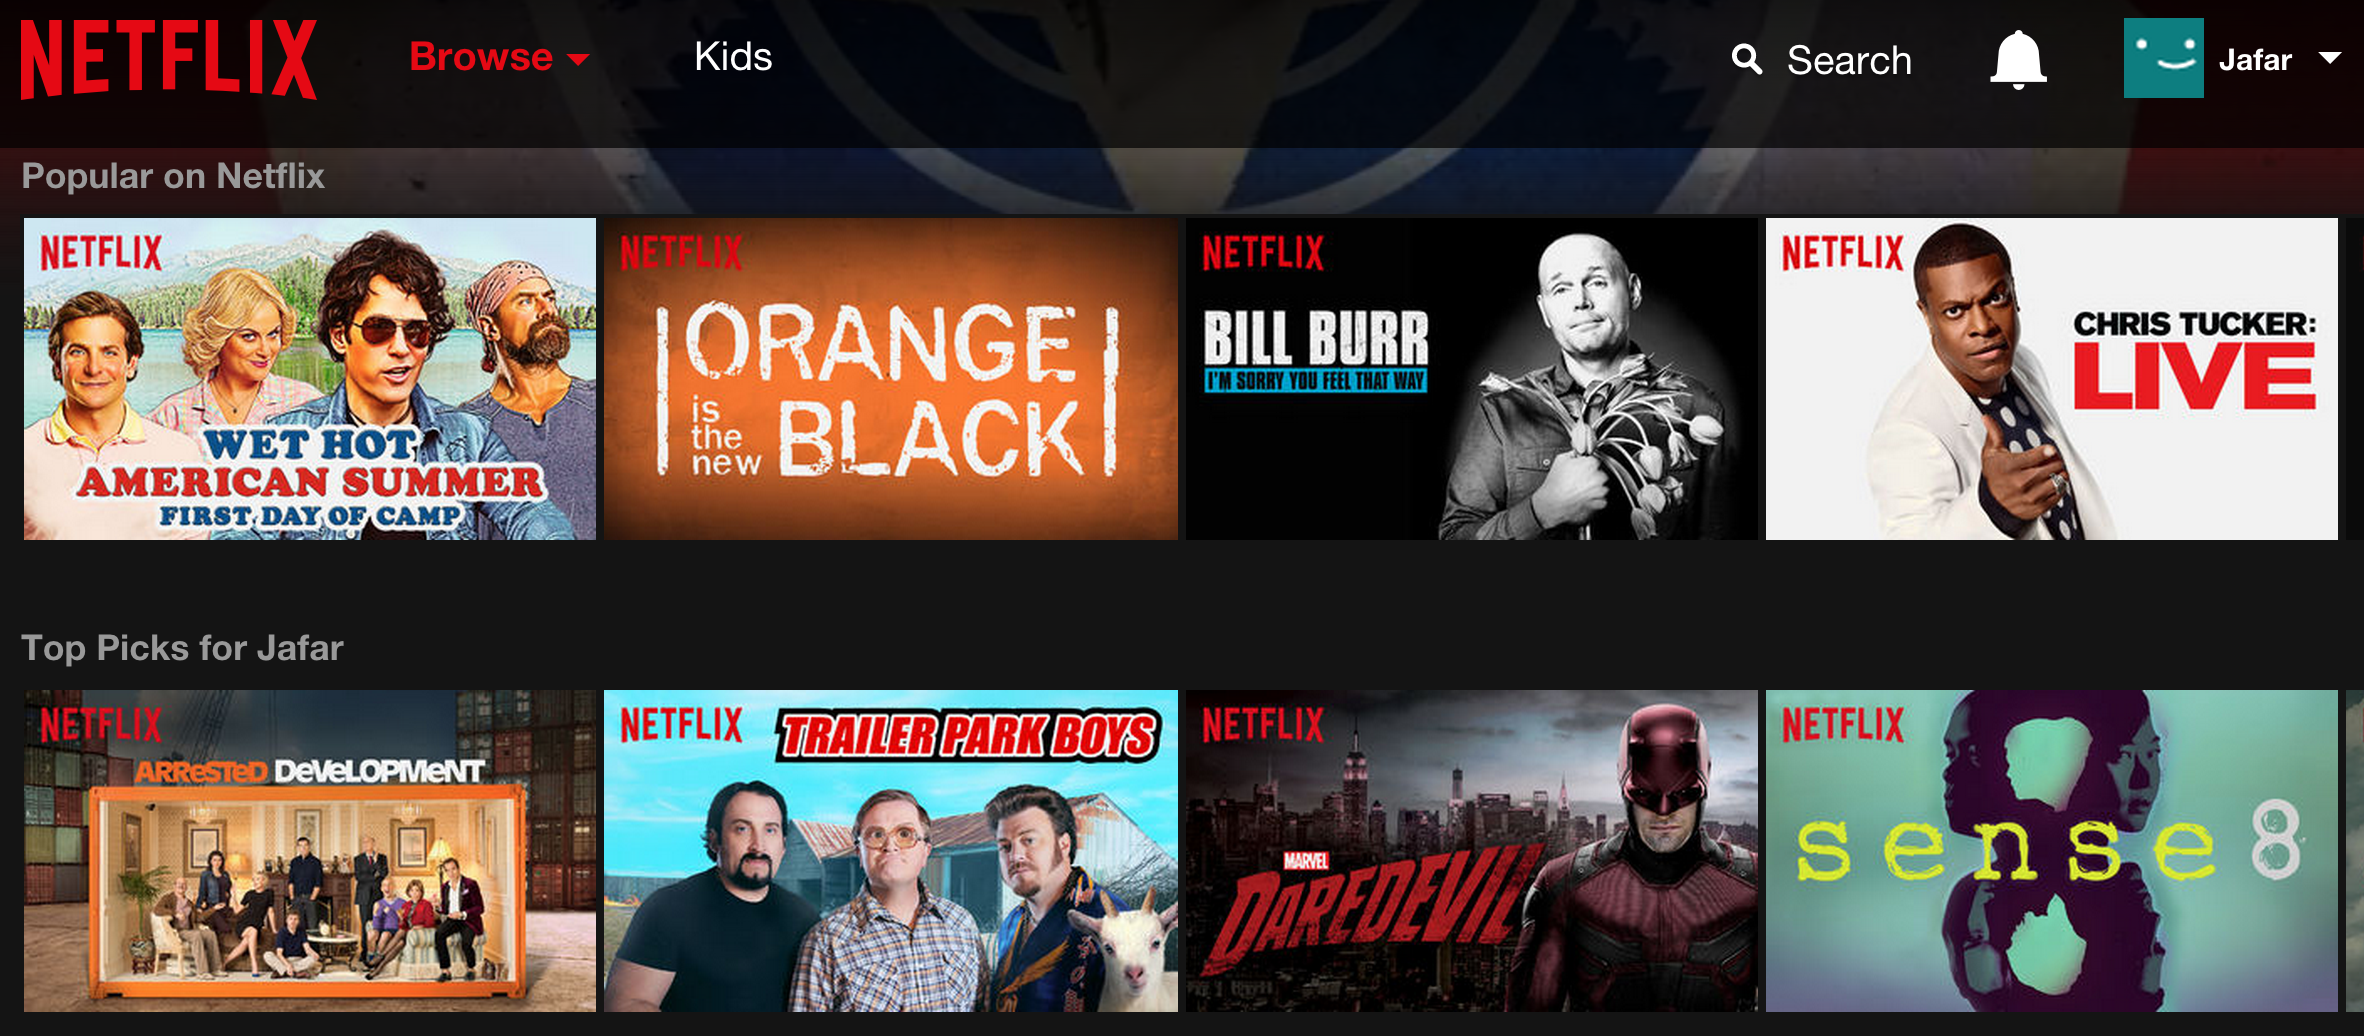 Netflix Homepage